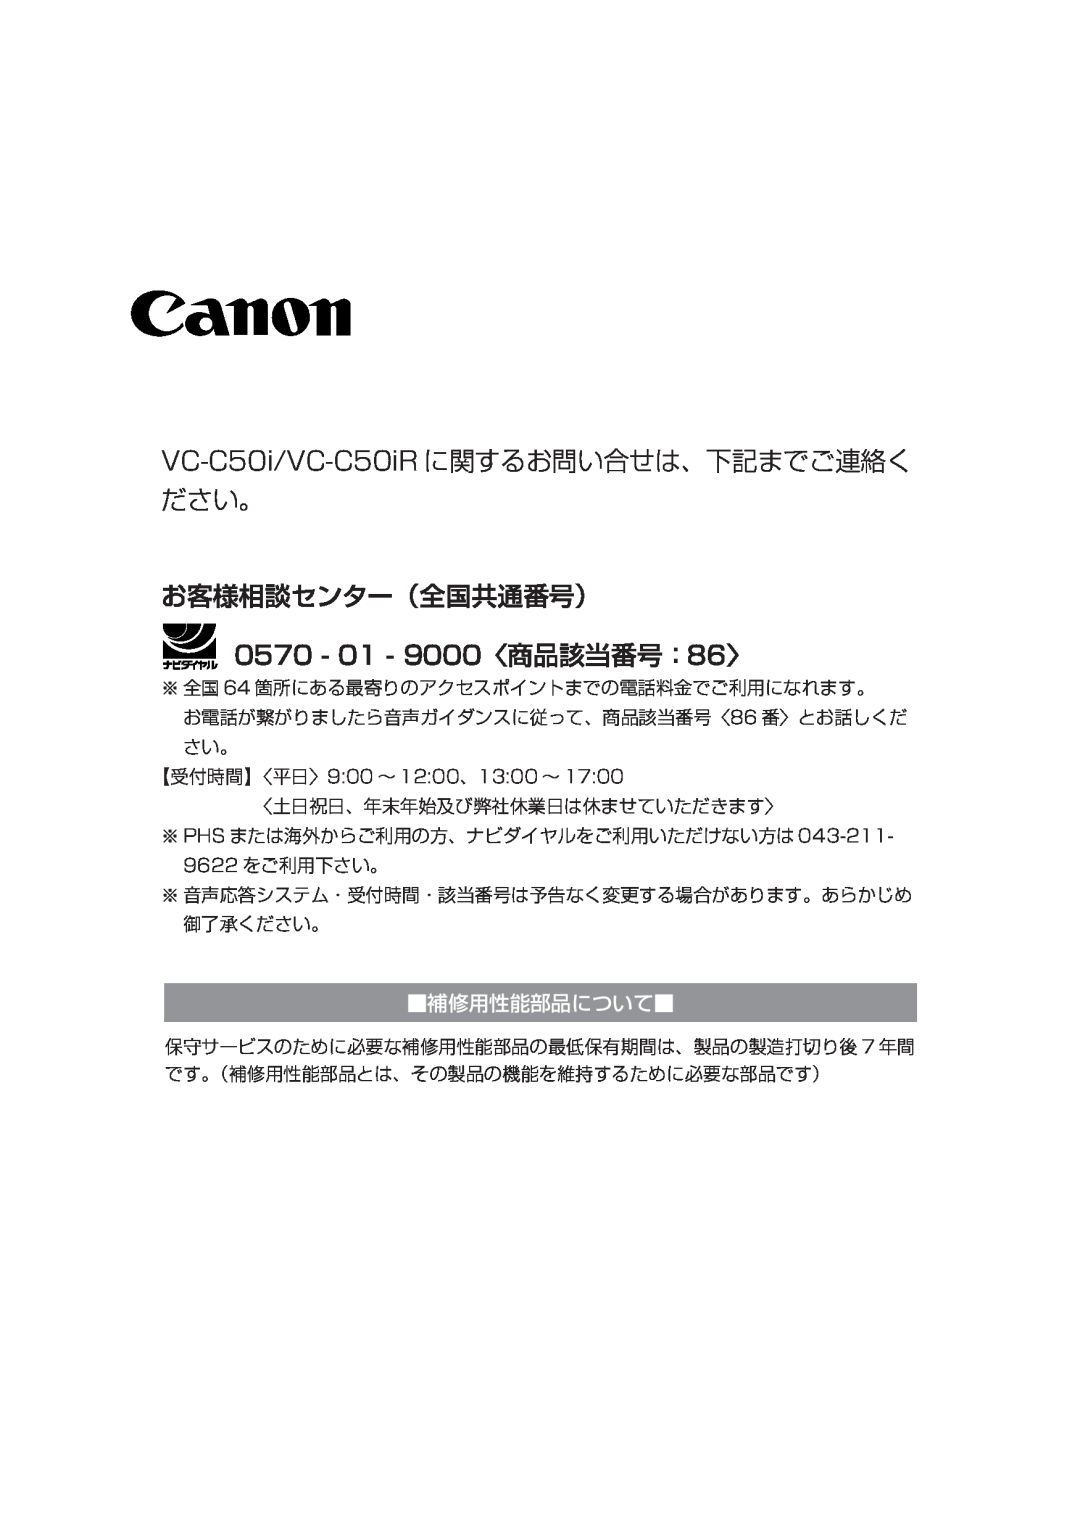 Canon VC-C50IR VC-C50i/VC-C50iR に関するお問い合せは、下記までご連絡く ださい。, お客様相談センター（全国共通番号）, 0570 - 01 - 9000〈商品該当番号：86〉, 補修用性能部品について 